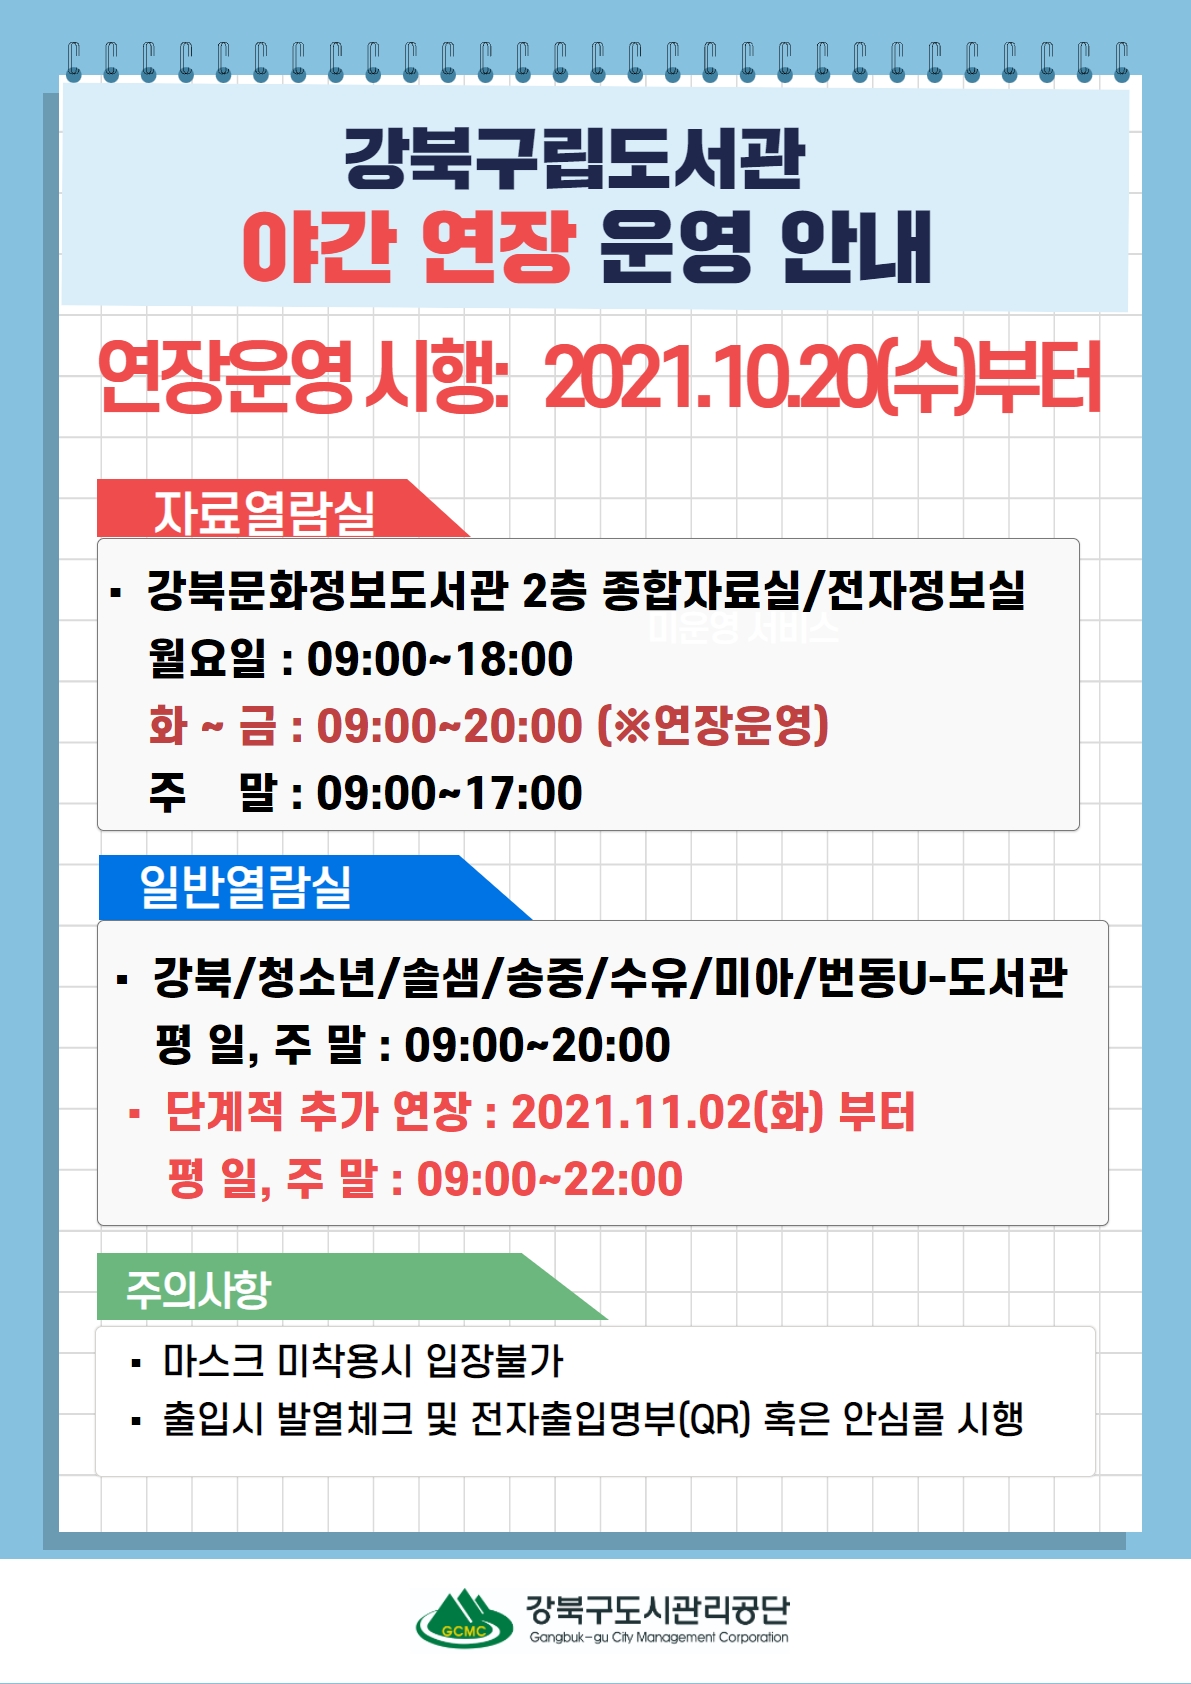 강북구립도서관 21년 10월 20일부터 20시까지, 11월 2일부터는 22시까지 야간연장운영합니다